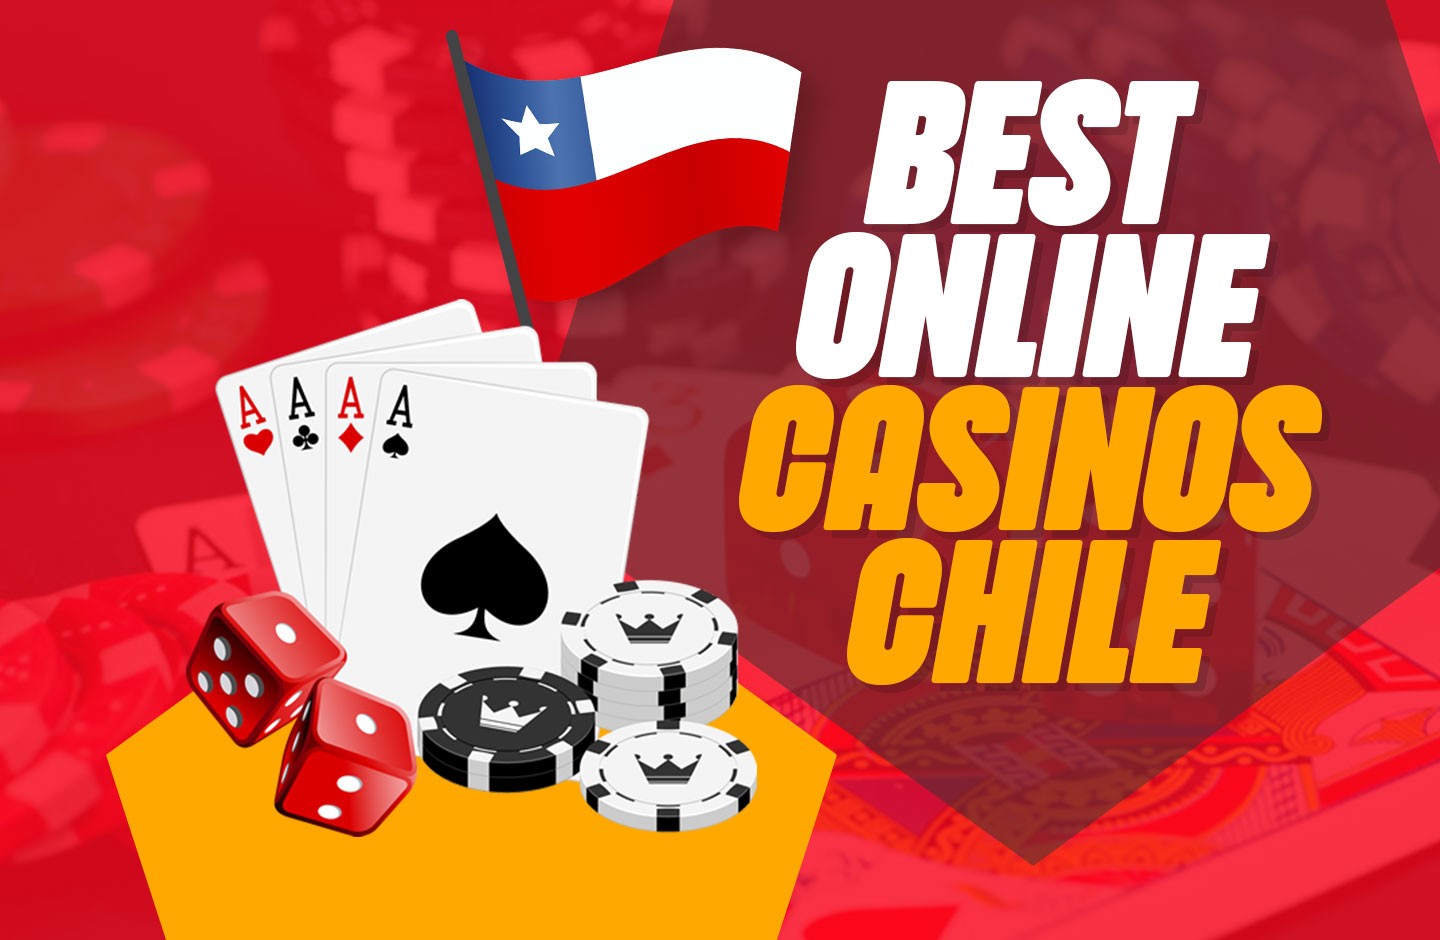 Los 5 libros principales sobre casino chileno